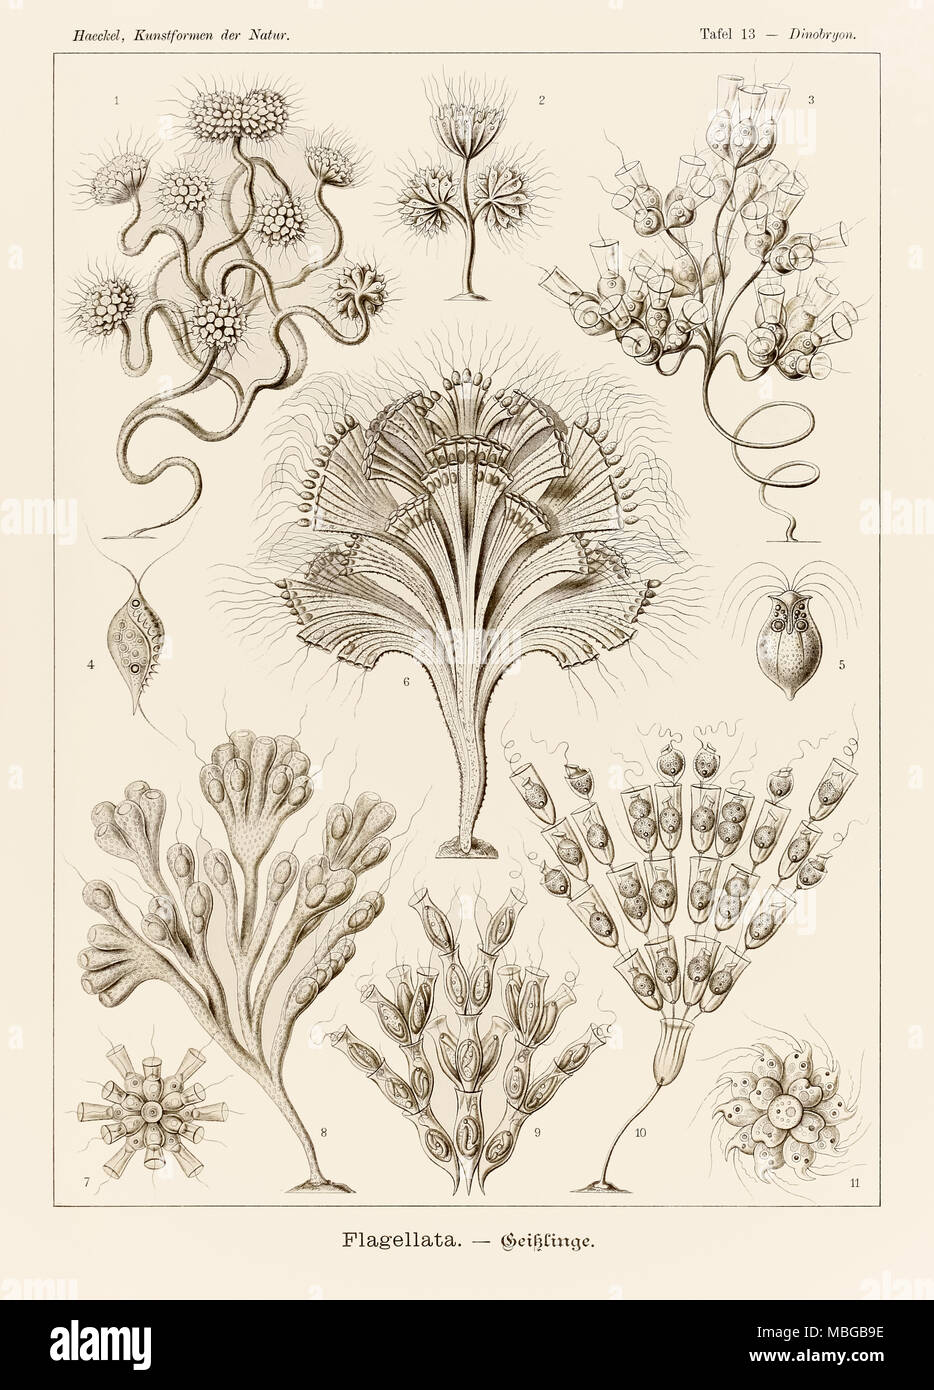 13 Plaque Dinobryon Flagellata de 'Kunstformen der Natur' (formes d'art dans la Nature) illustrée par Ernst Haeckel (1834-1919). Voir plus d'informations ci-dessous. Banque D'Images